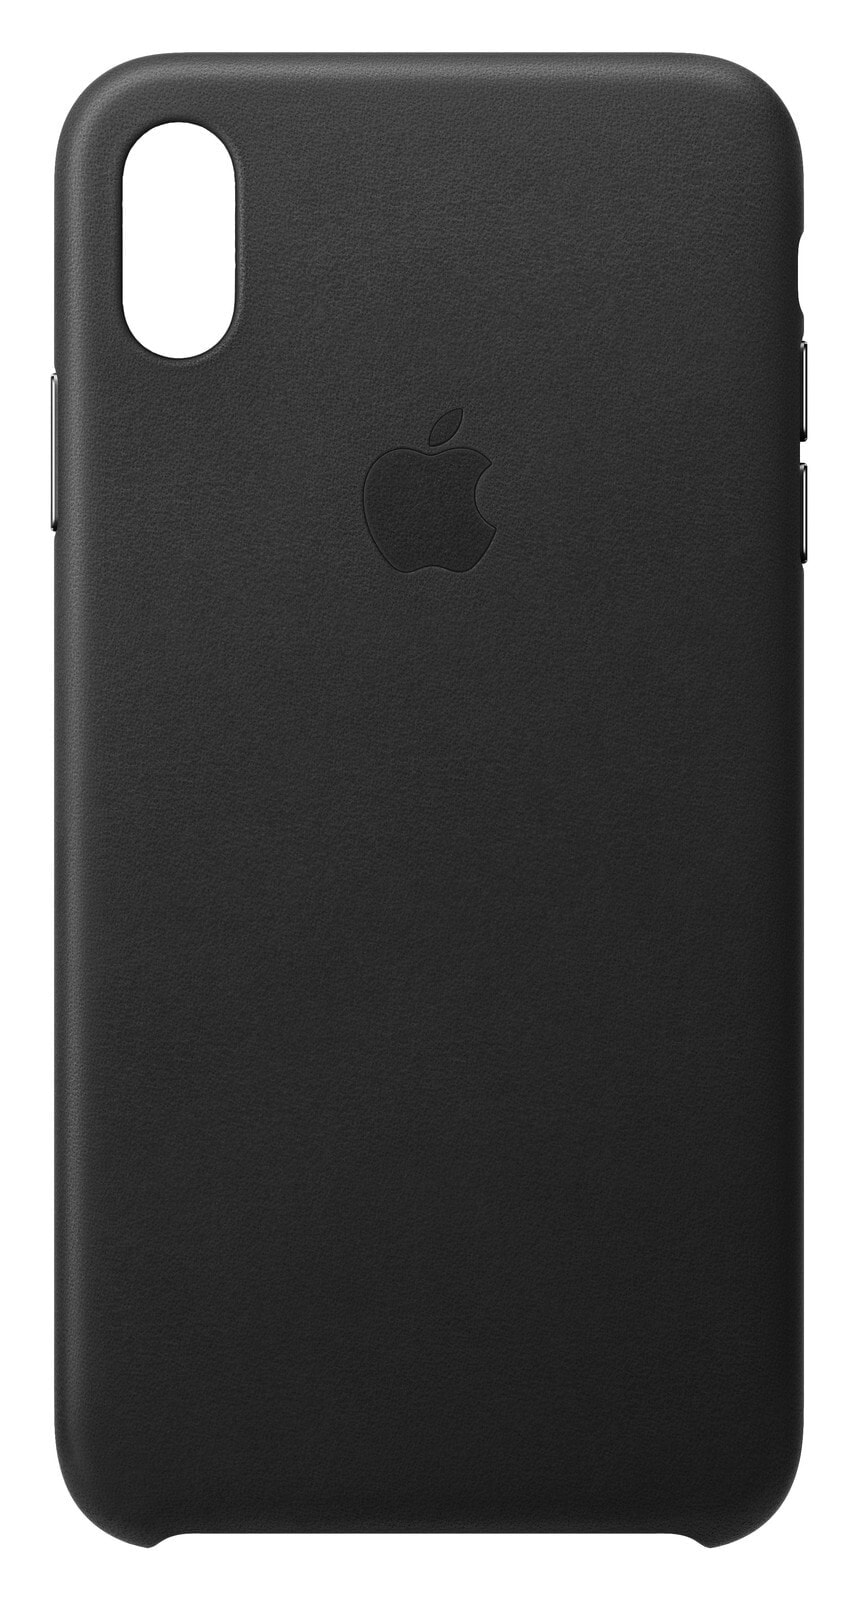 Чехол кожаный Apple Leather Case MRWT2ZM/A для iPhone XS Max чёрный